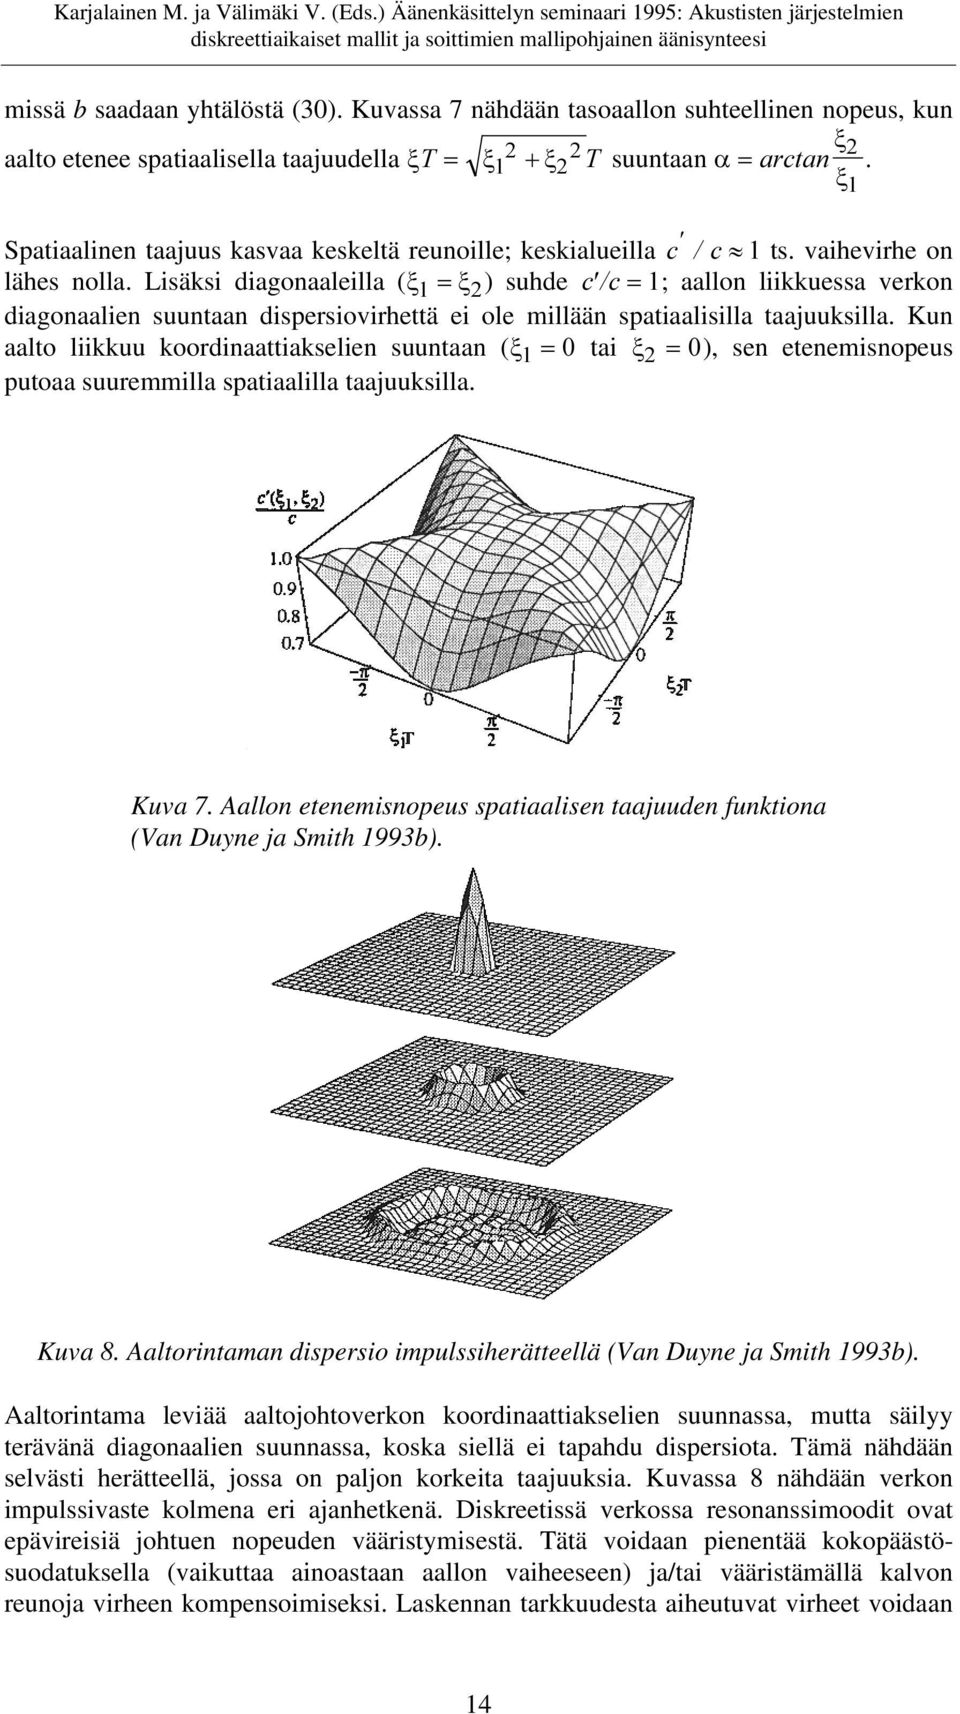 Lisäksi diagonaaleilla (x = x) suhde F F= ; aallon liikkuessa verkon diagonaalien suuntaan dispersiovirhettä ei ole millään spatiaalisilla taajuuksilla.